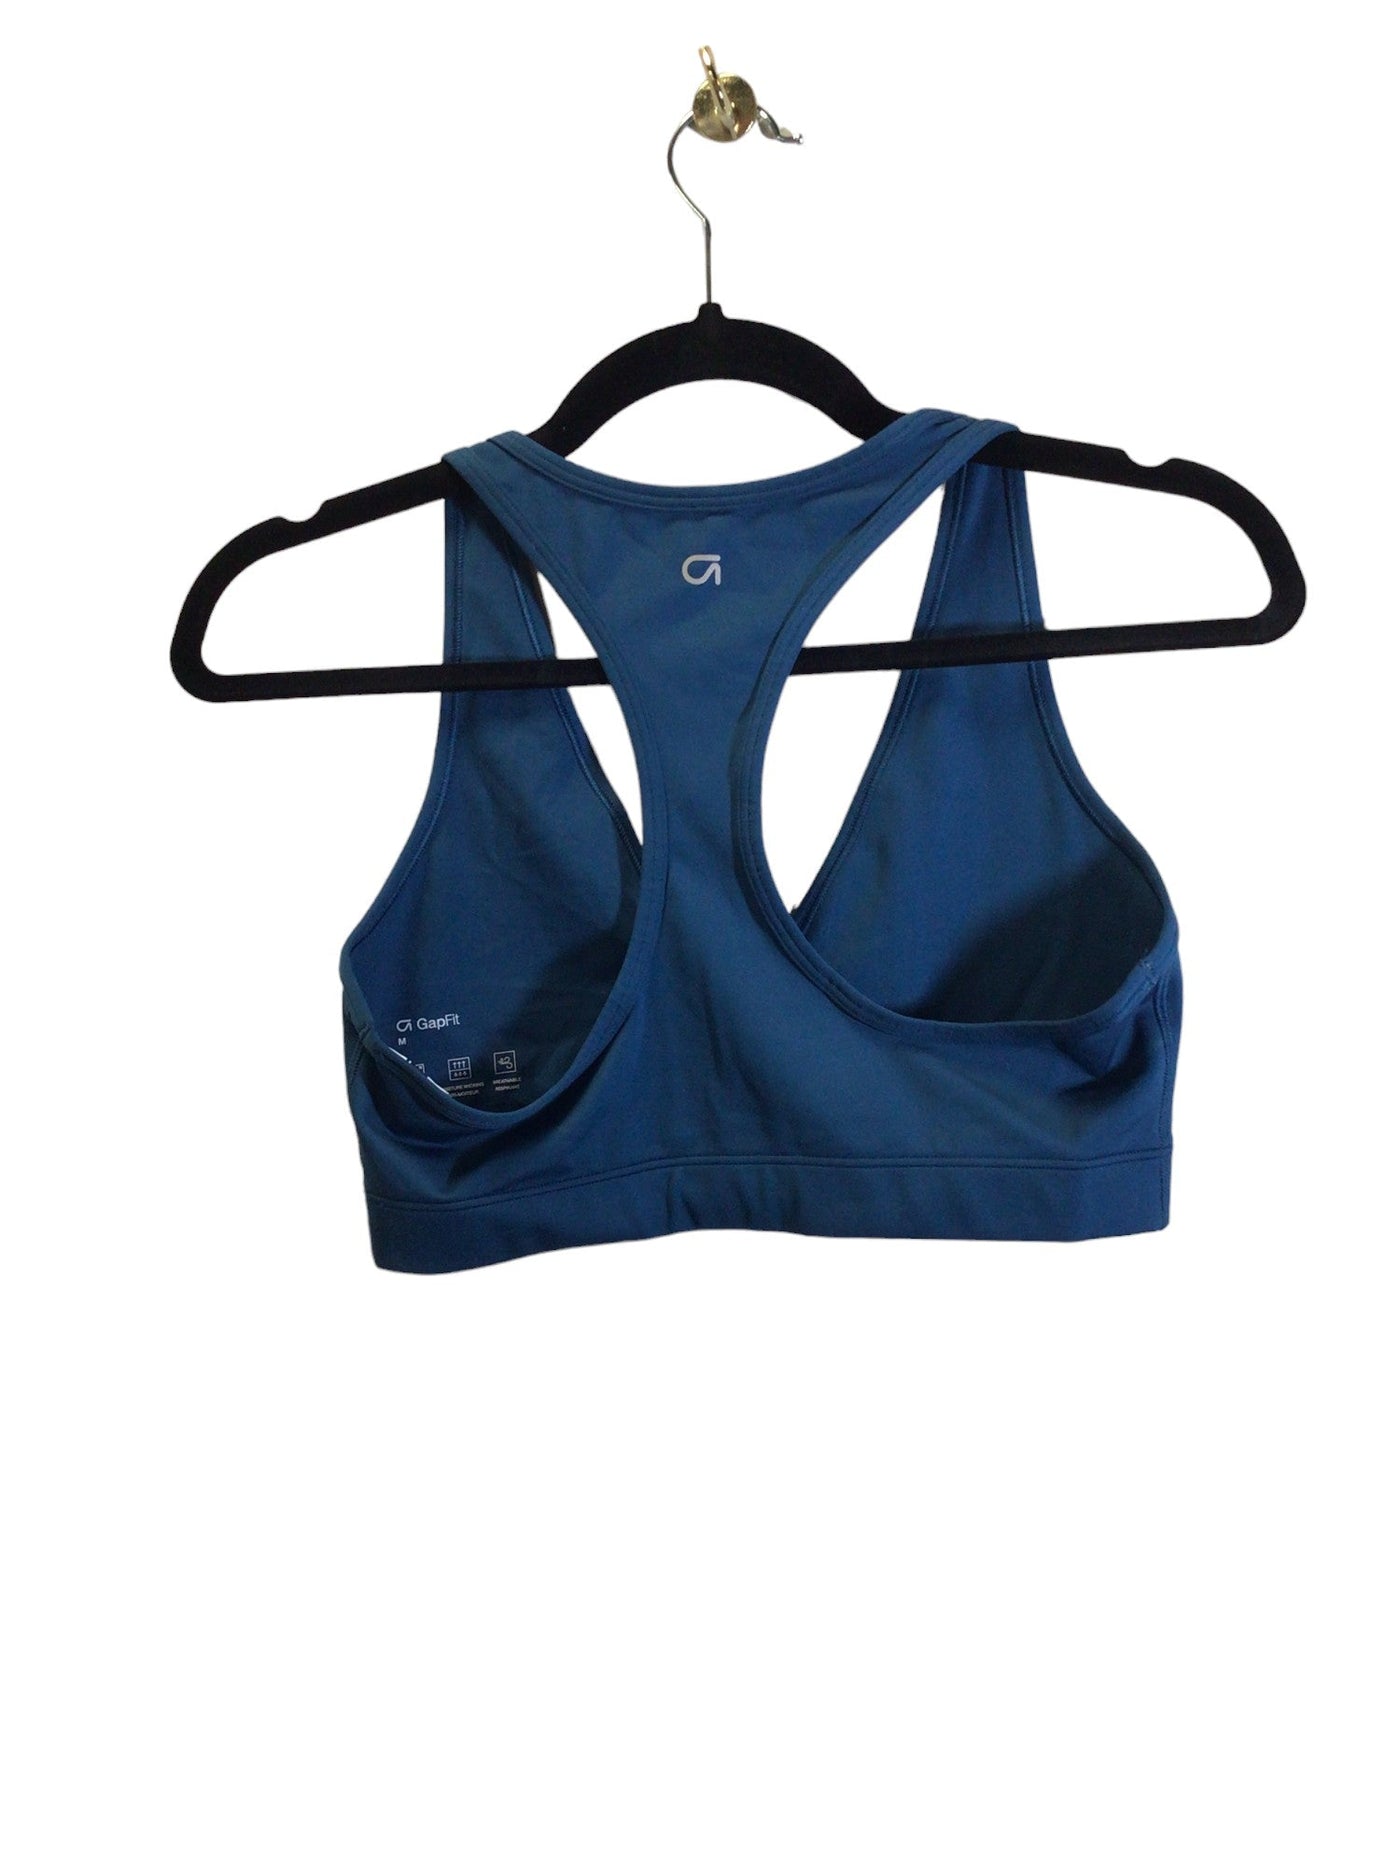 GAP Women Activewear Sports Bras Regular fit in Blue - Size M | 12.25 $ KOOP